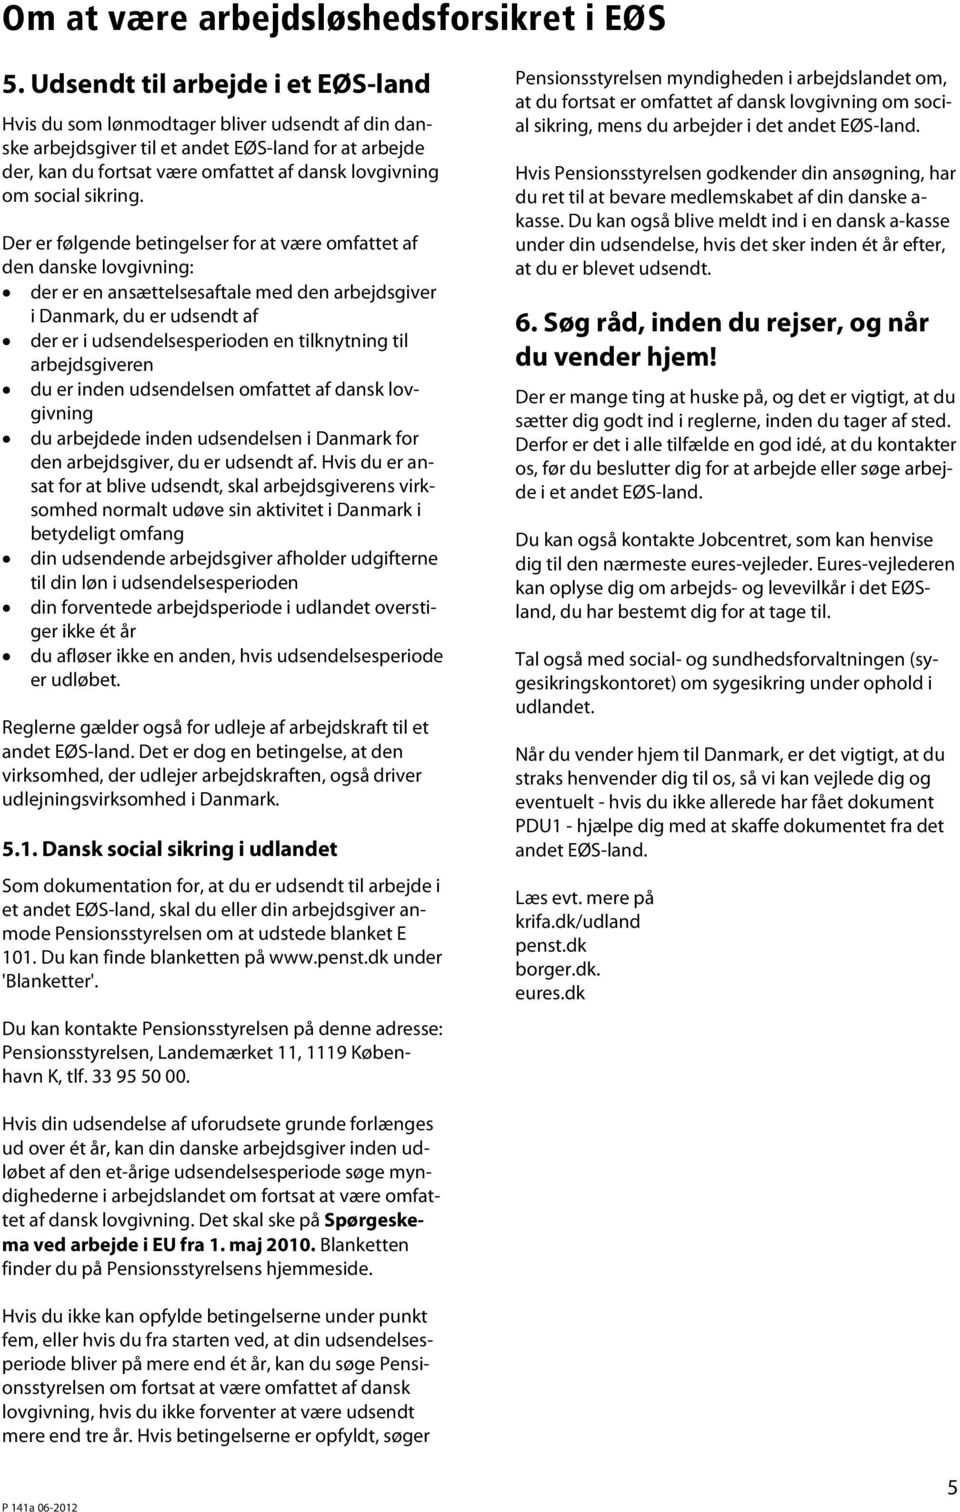 Der er følgende betingelser for at være omfattet af den danske lovgivning: der er en ansættelsesaftale med den arbejdsgiver i Danmark, du er udsendt af der er i udsendelsesperioden en tilknytning til